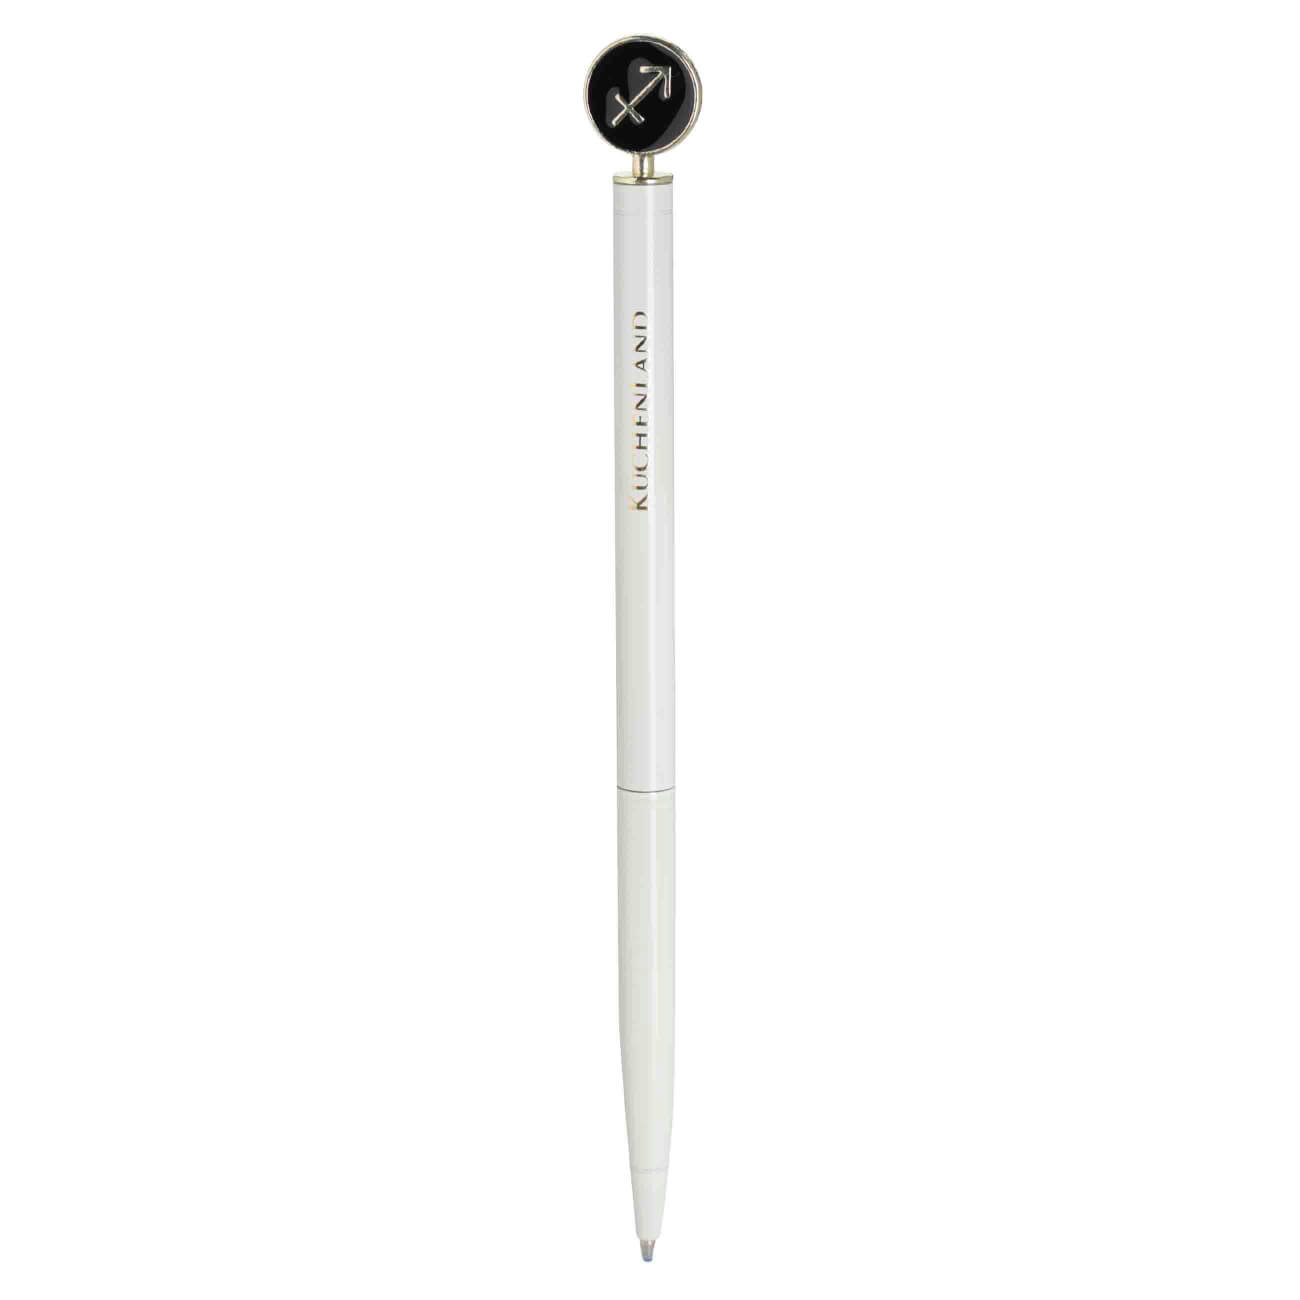 Ручка шариковая, 15 см, с фигуркой, сталь, молочно-золотистая, Стрелец, Zodiac ручка с шейкером